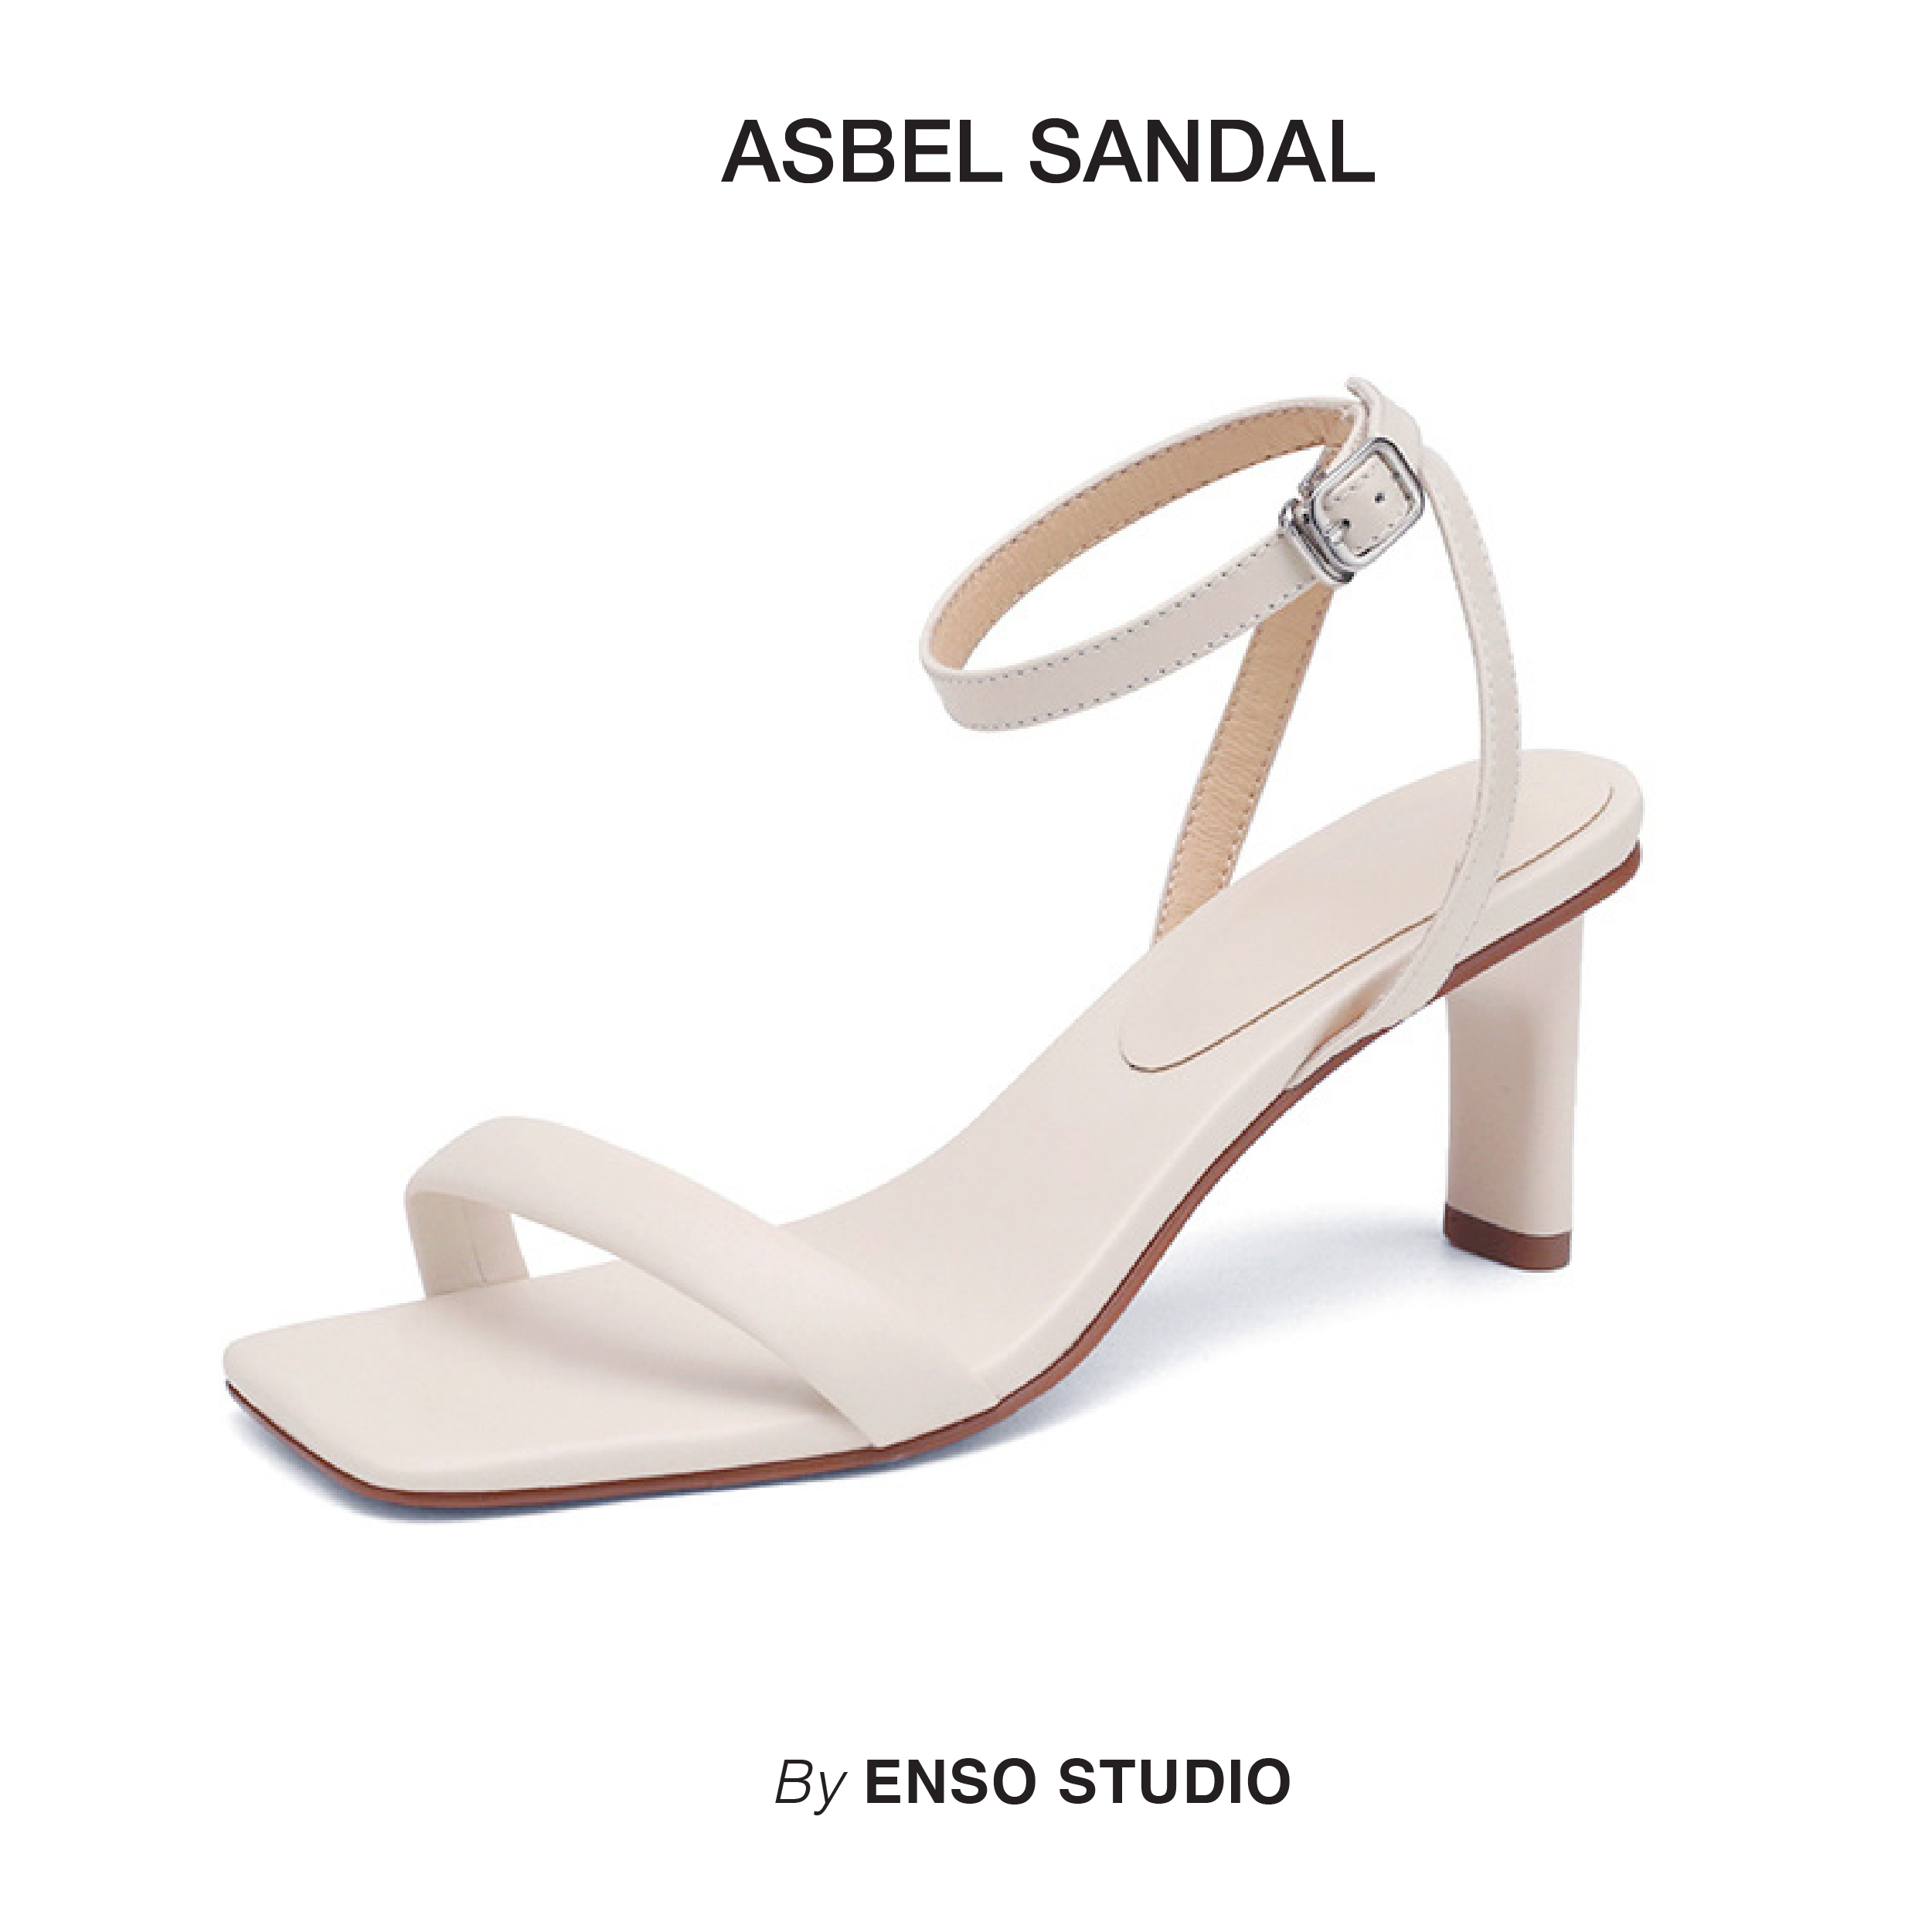 ENSo - Sandal cao gót da thật ASBEL màu trắng